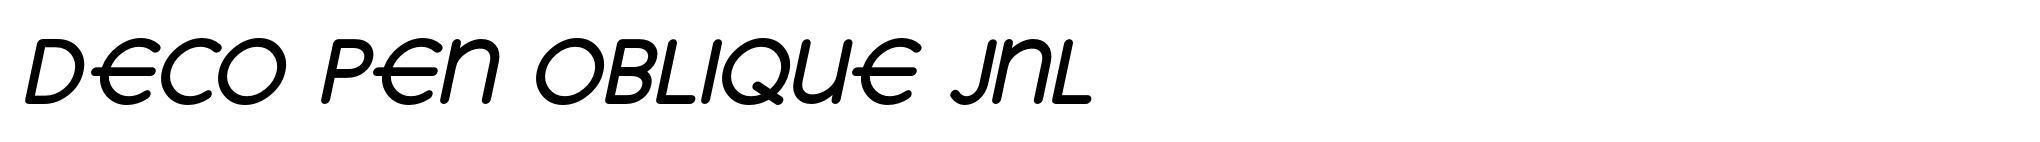 Deco Pen Oblique JNL image